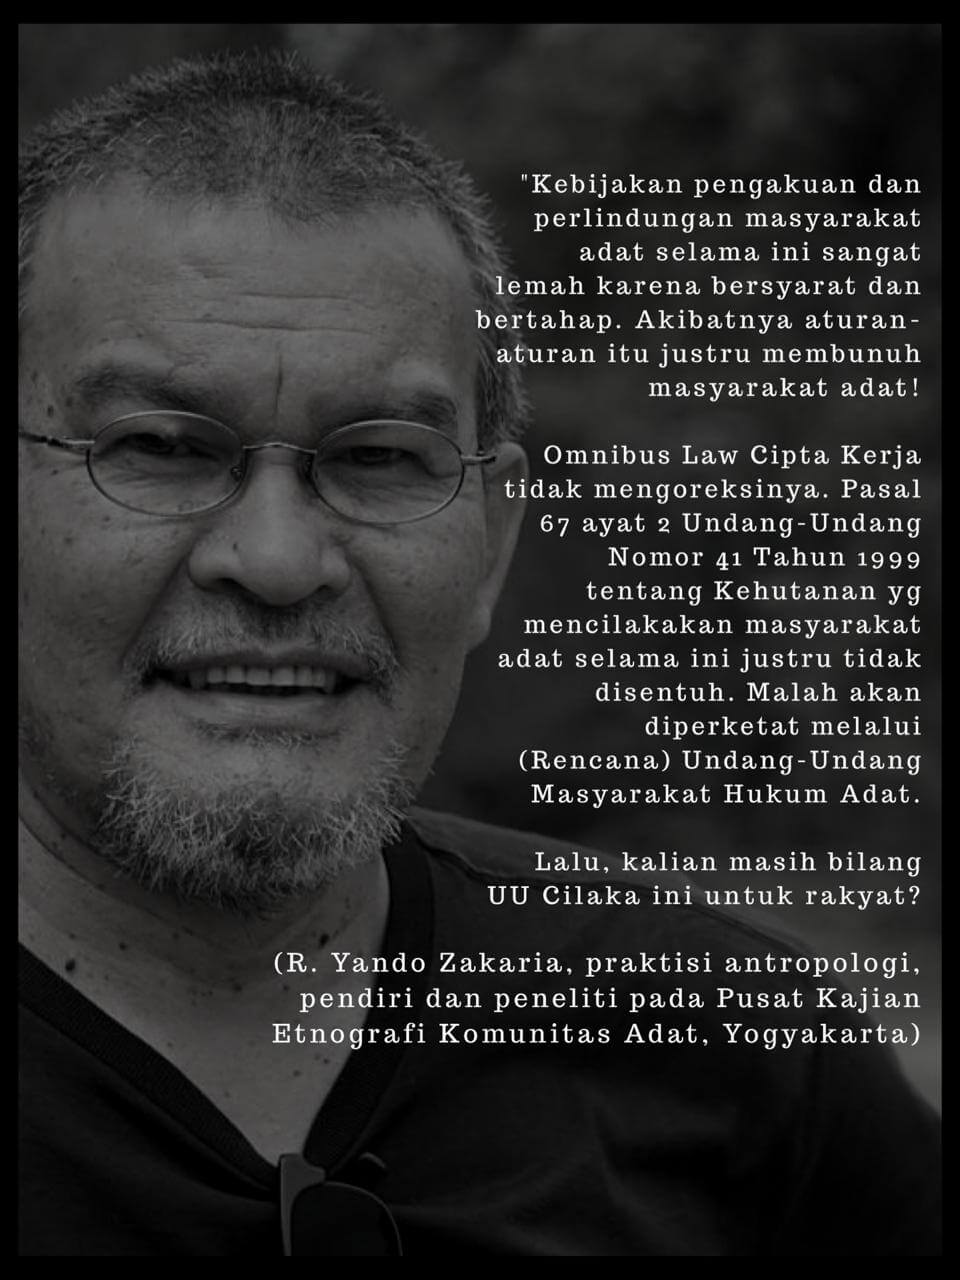 Pendiri dan Peneliti Pusat Kajian Etnografi Komunitas Adat Yogyakarta, R. Yando Zakaria